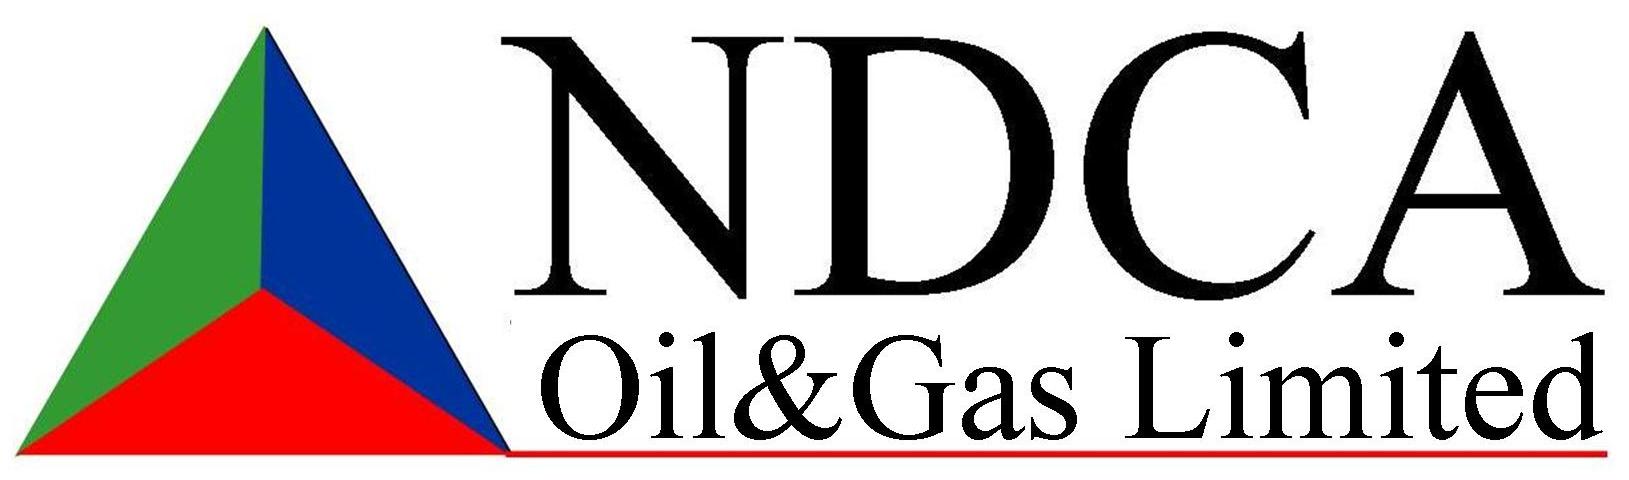 NDCA OIL GAS